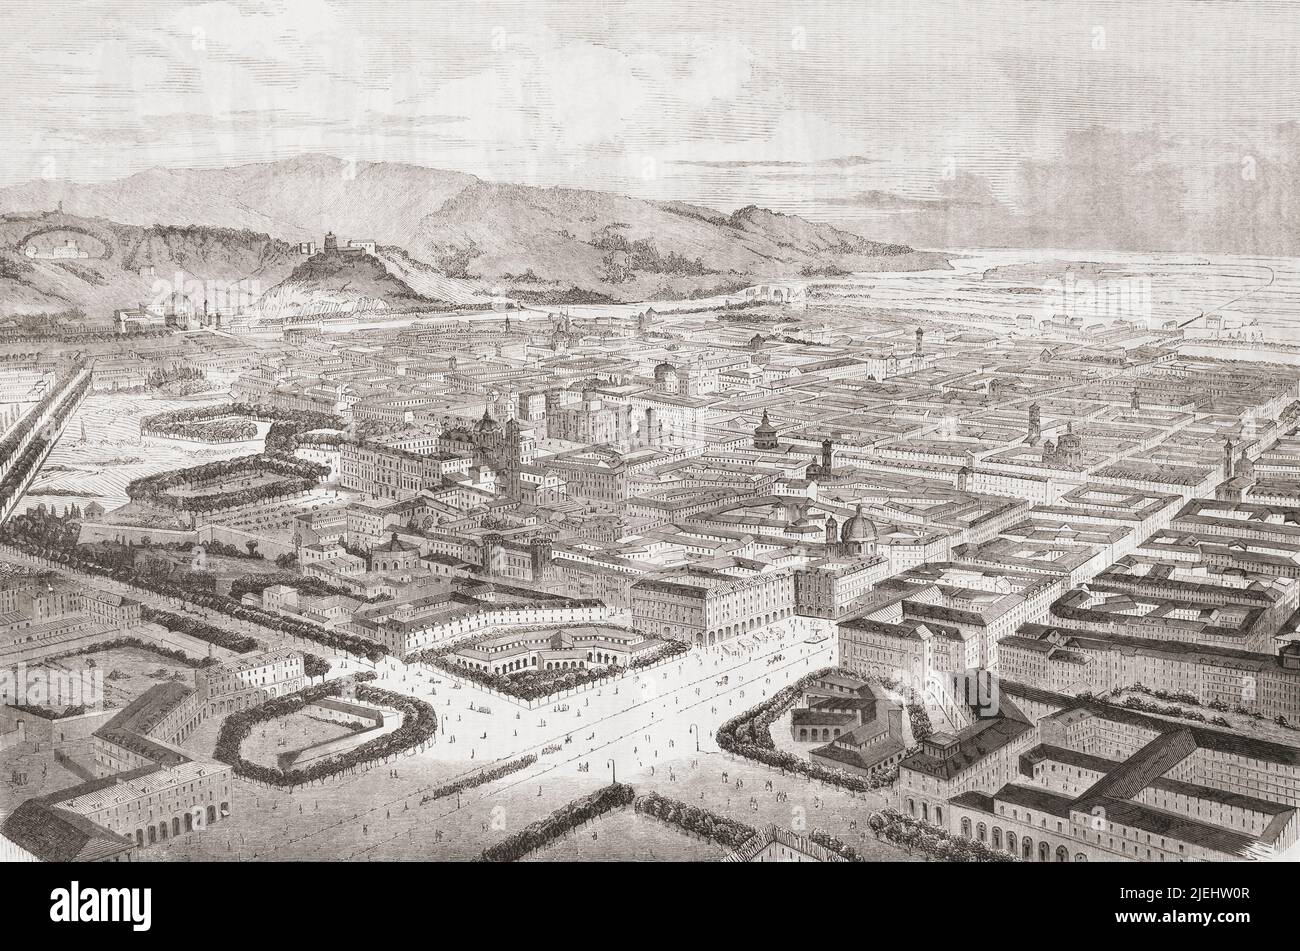 Veduta generale di Torino, Italia, vista qui nel 19th secolo. Da l'Univers Illustre, pubblicato Parigi, 1859 Foto Stock